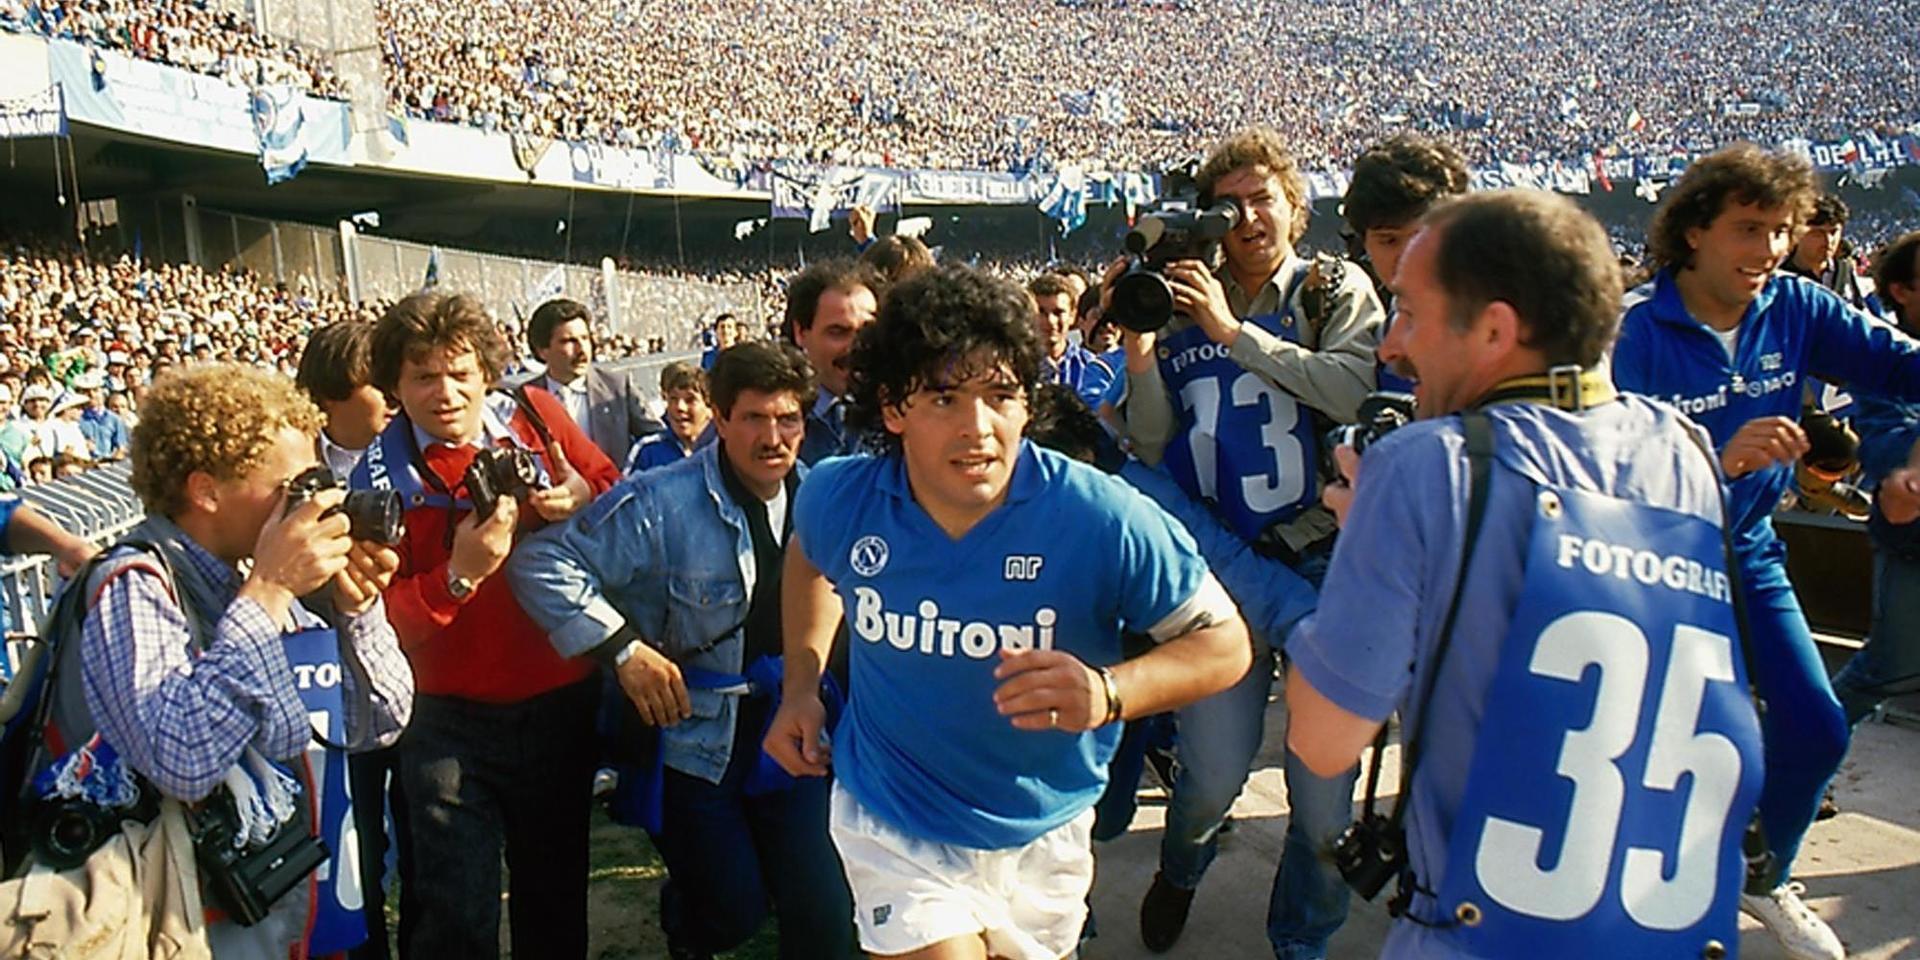 Diego Maradona nådde toppen av sin spelarkarriär i italienska Napoli, men höll på att gå under privat på grund av den konstanta uppmärksamheten på stadens gator. Här syns han på Stadio San Paolo i ett klipp från HBO-dokumentären 'Diego Maradona'.